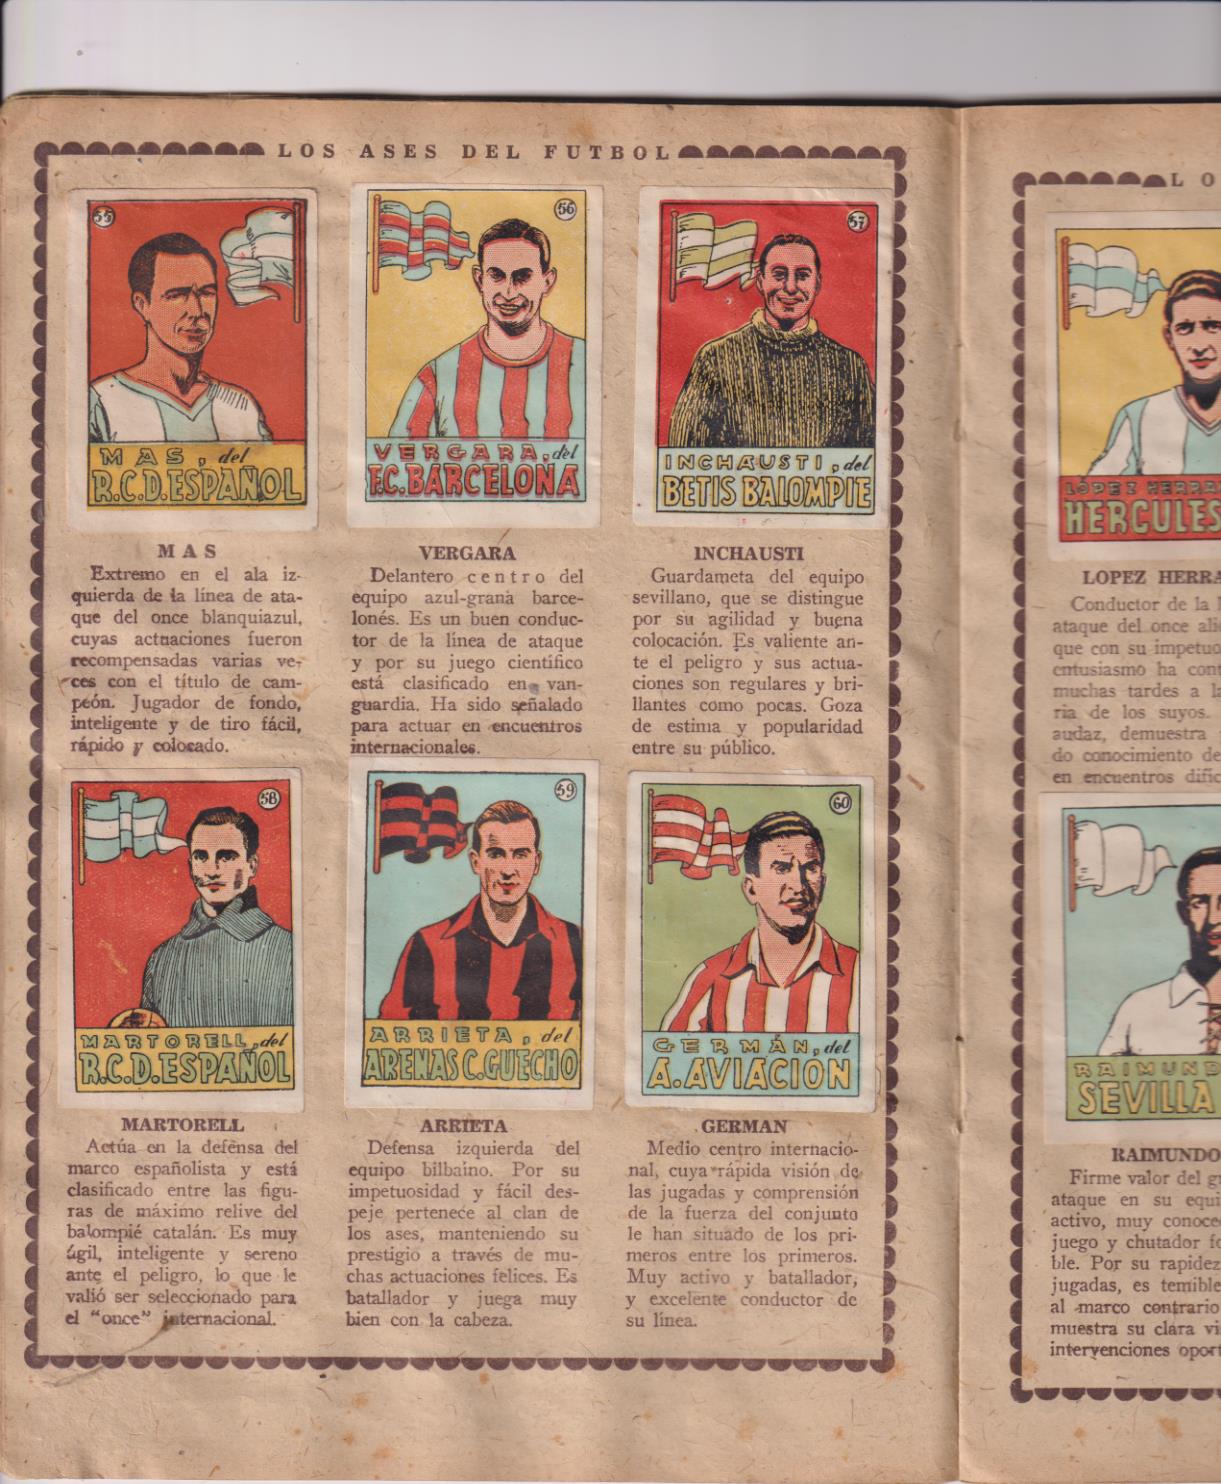 Cromos Cultura. Álbum Primero. Bruguera 1942. Contiene 70 cromos de Futbol (de ellos 7 grandes) + 4 cromos de ciclistas y 8 de cultura